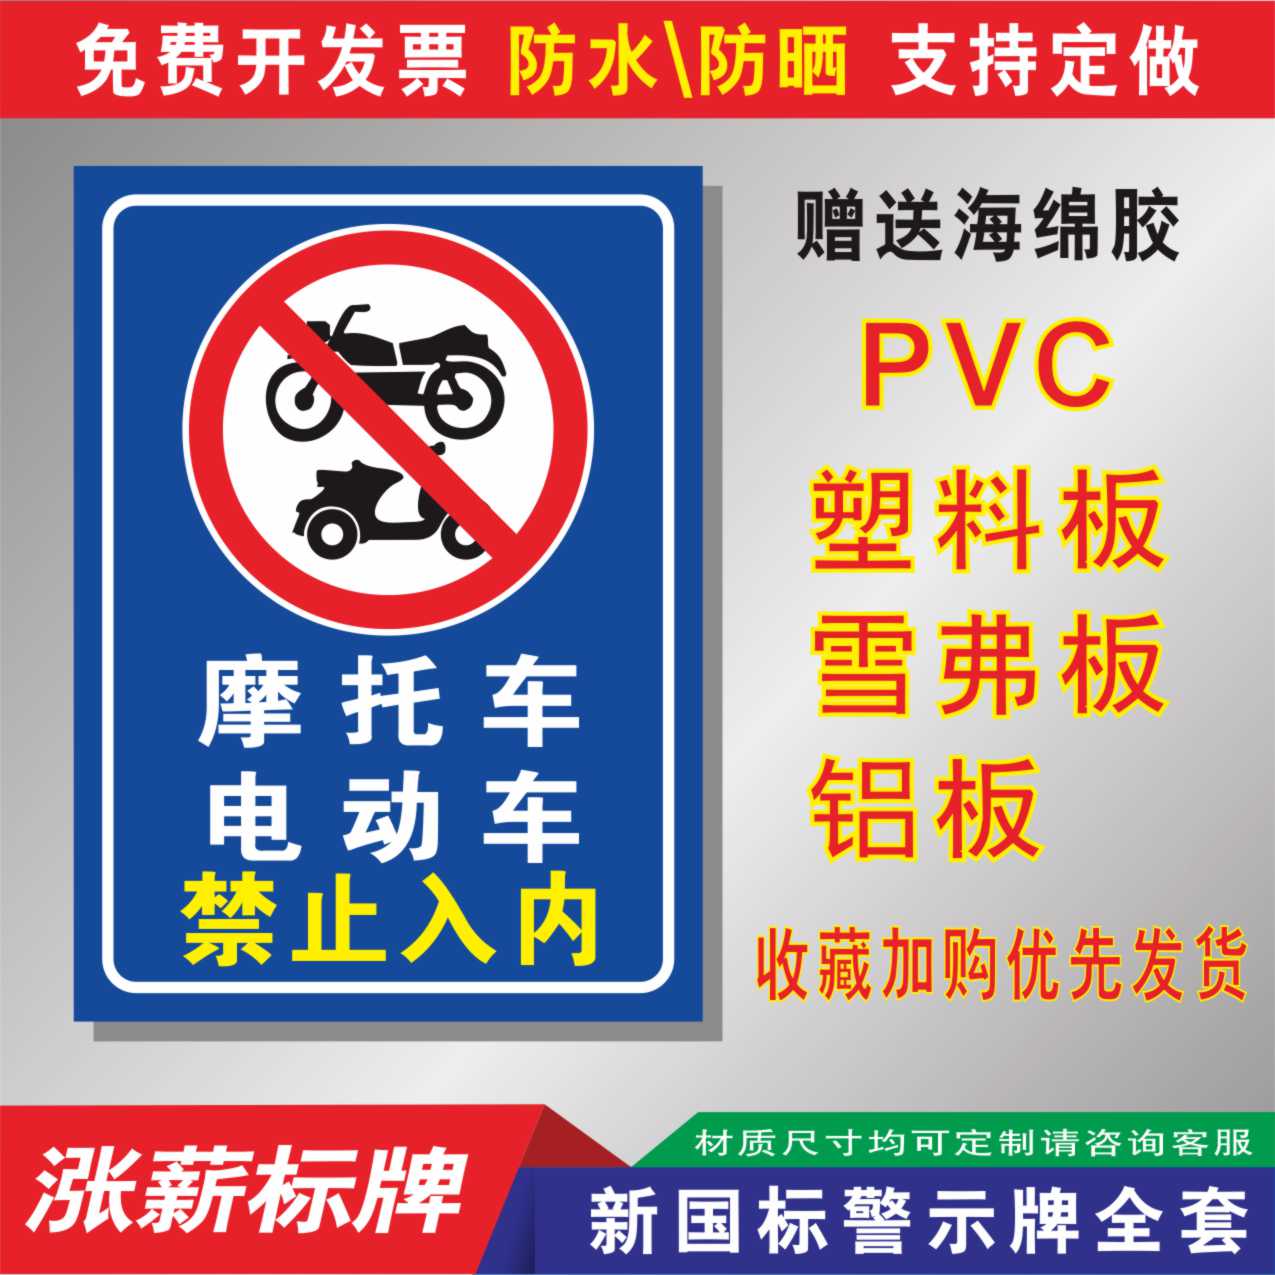 摩托车电动车禁止t入内外来人员和共享单动车非本小区车辆进出行人通行标识标志提示指示牌标牌挂牌立牌贴纸